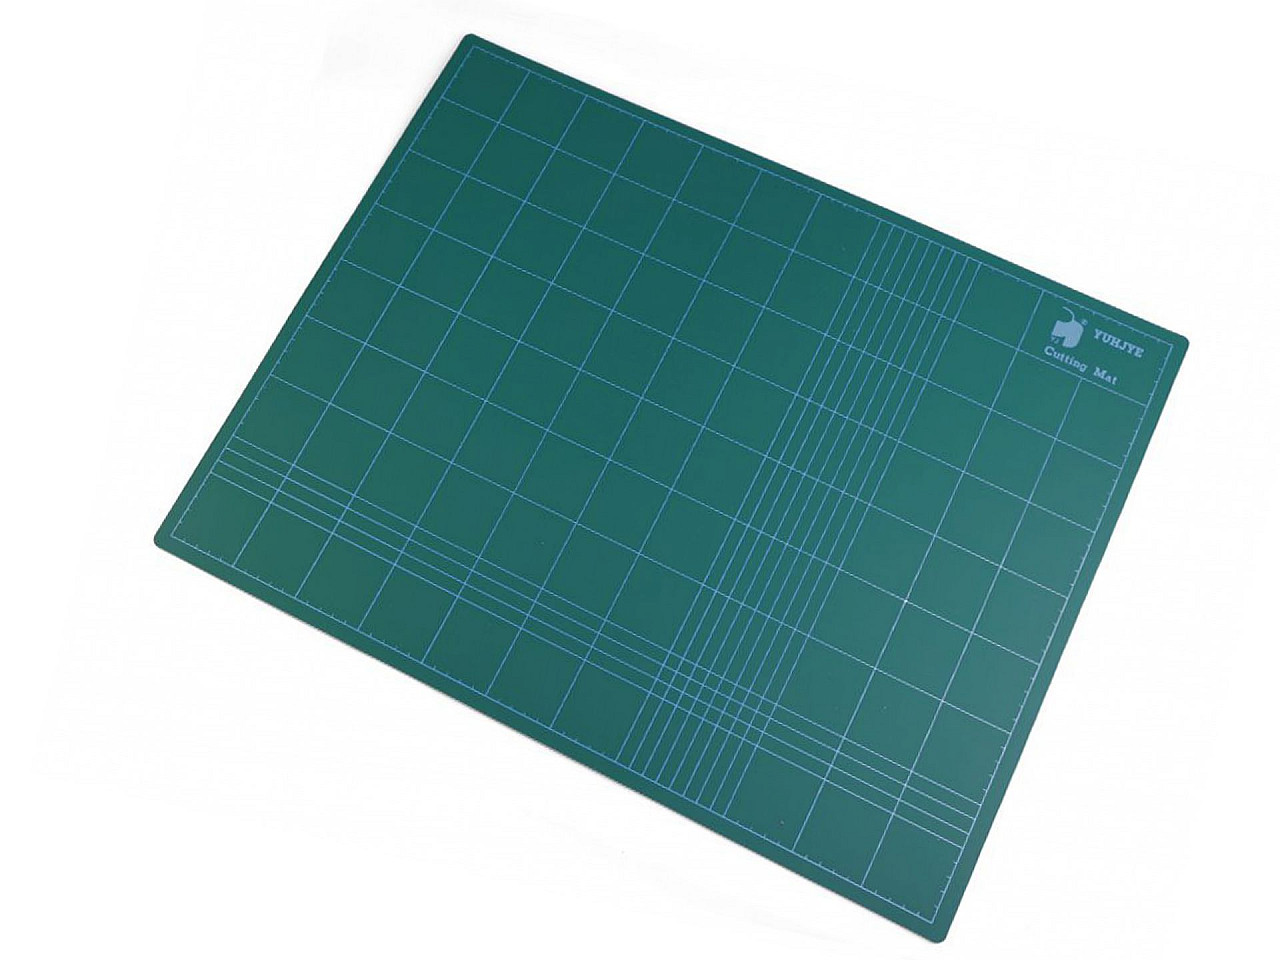 Řezací podložka 45x60 cm oboustranná, barva zelenomodrá